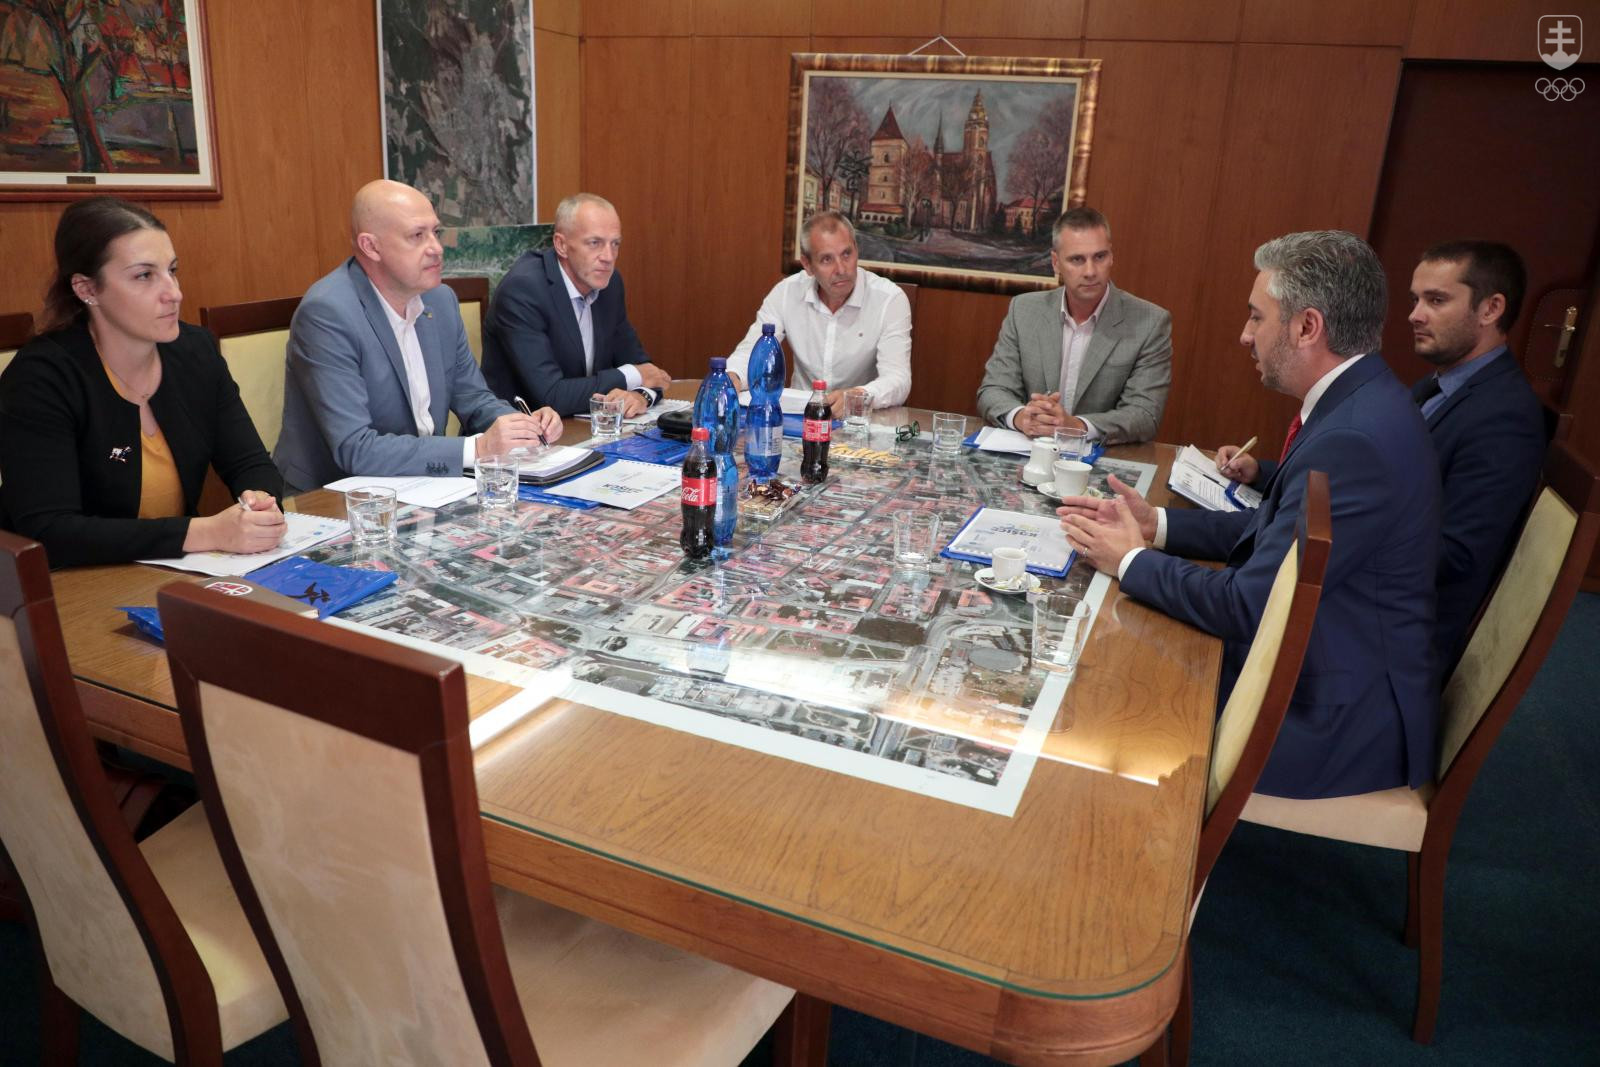 Spoločná fotografia z rokovania zástupcov SOV (vľavo), mesta Košice (v strede) a Košického samosprávneho kraja. FOTO: MESTO KOŠICE